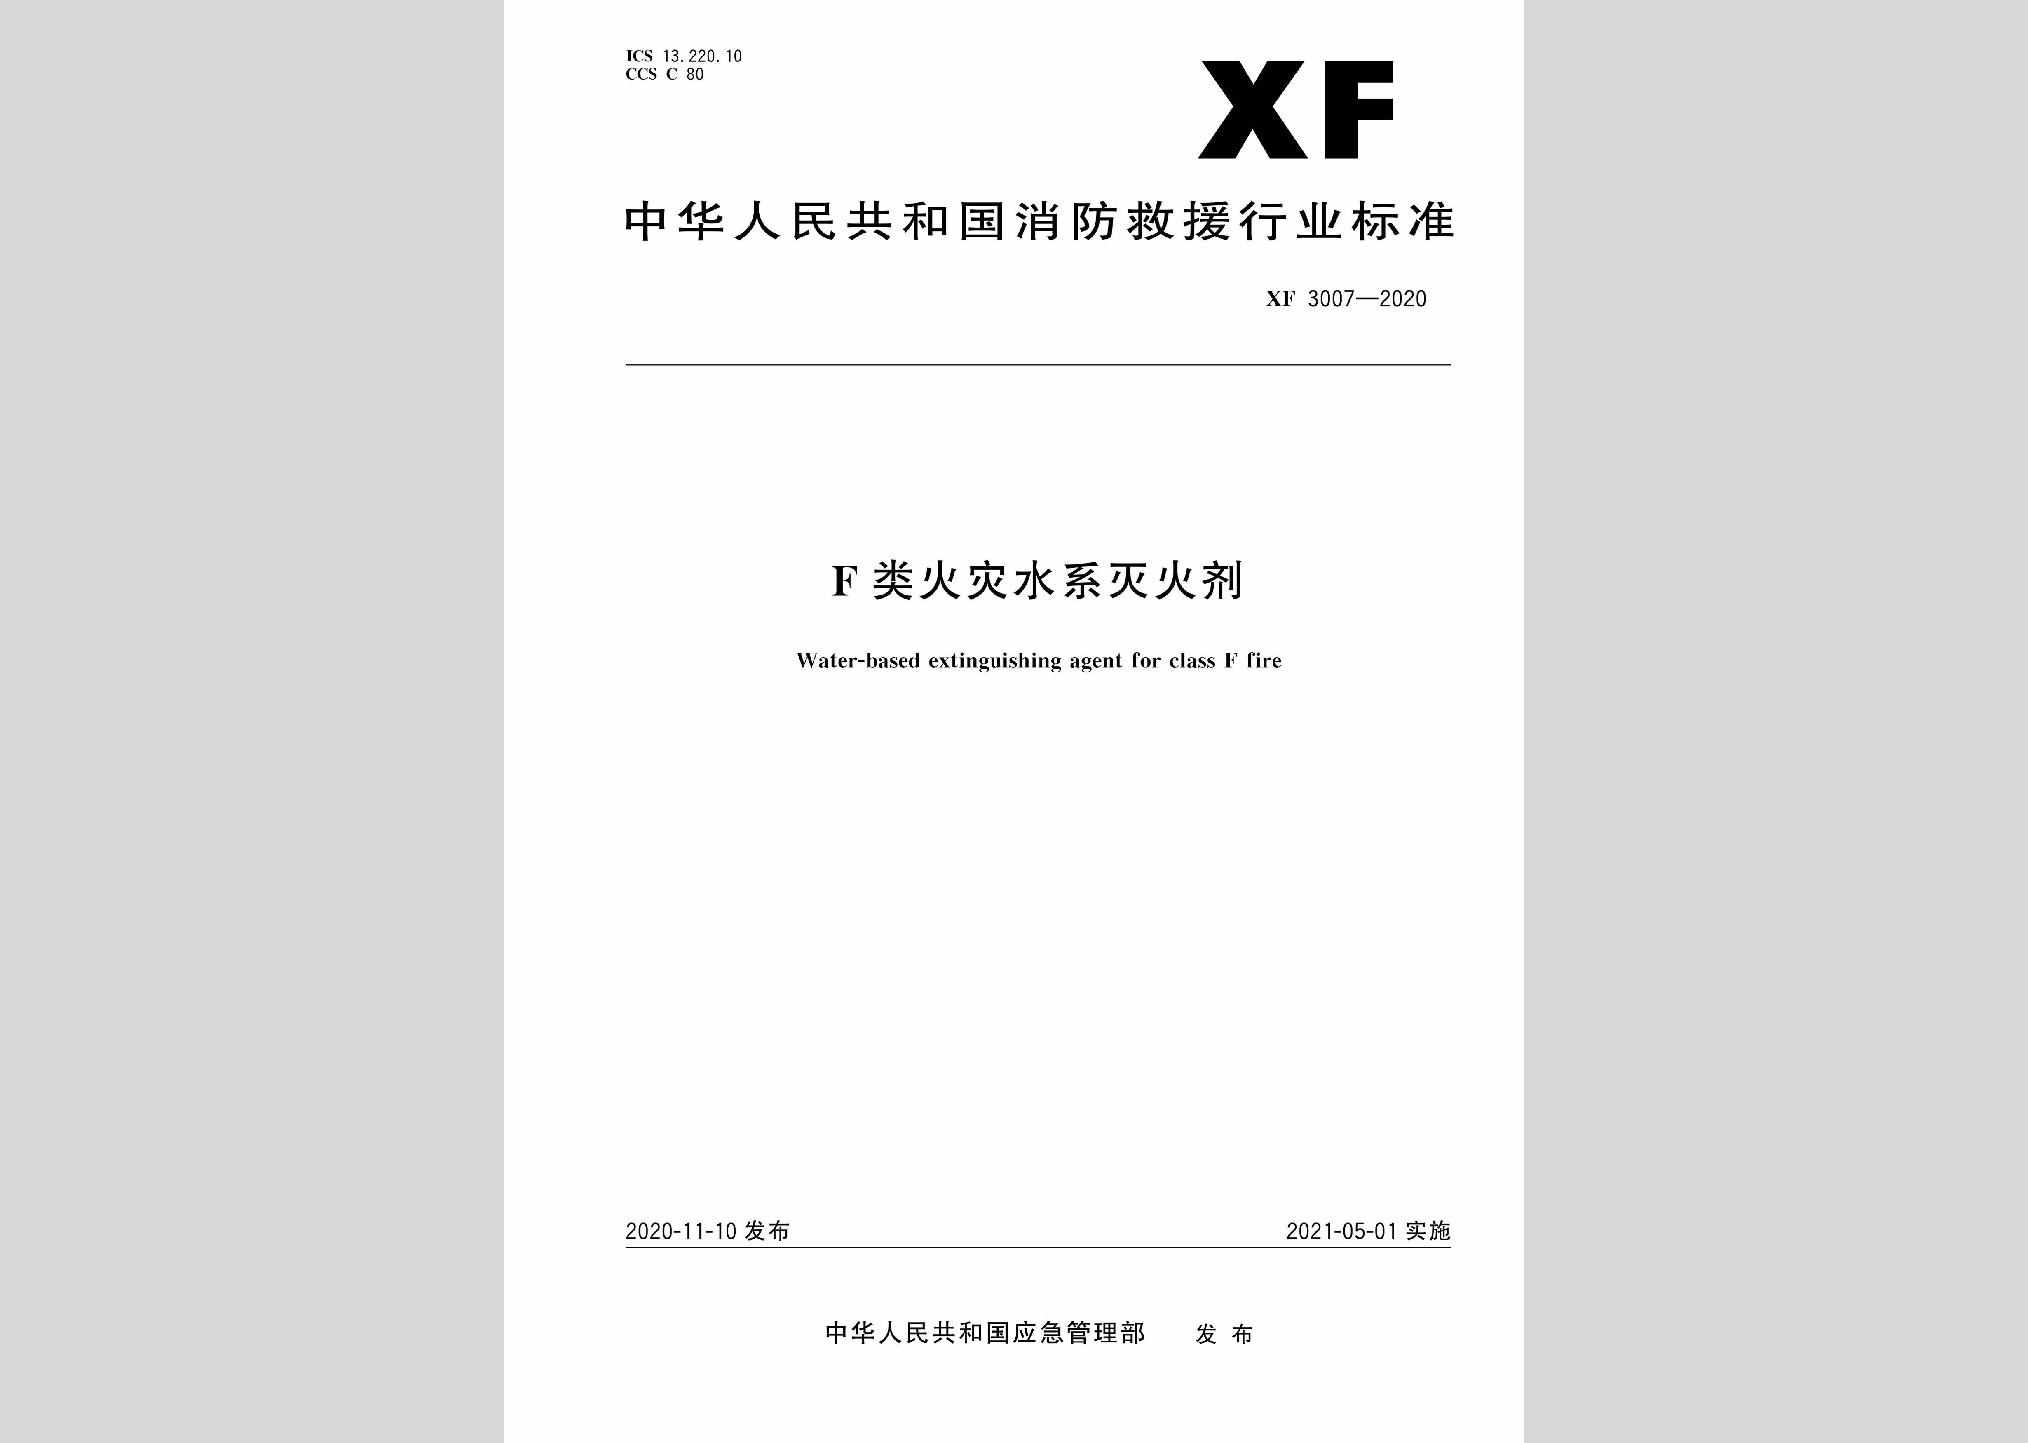 XF3007-2020：F类火灾水系灭火剂